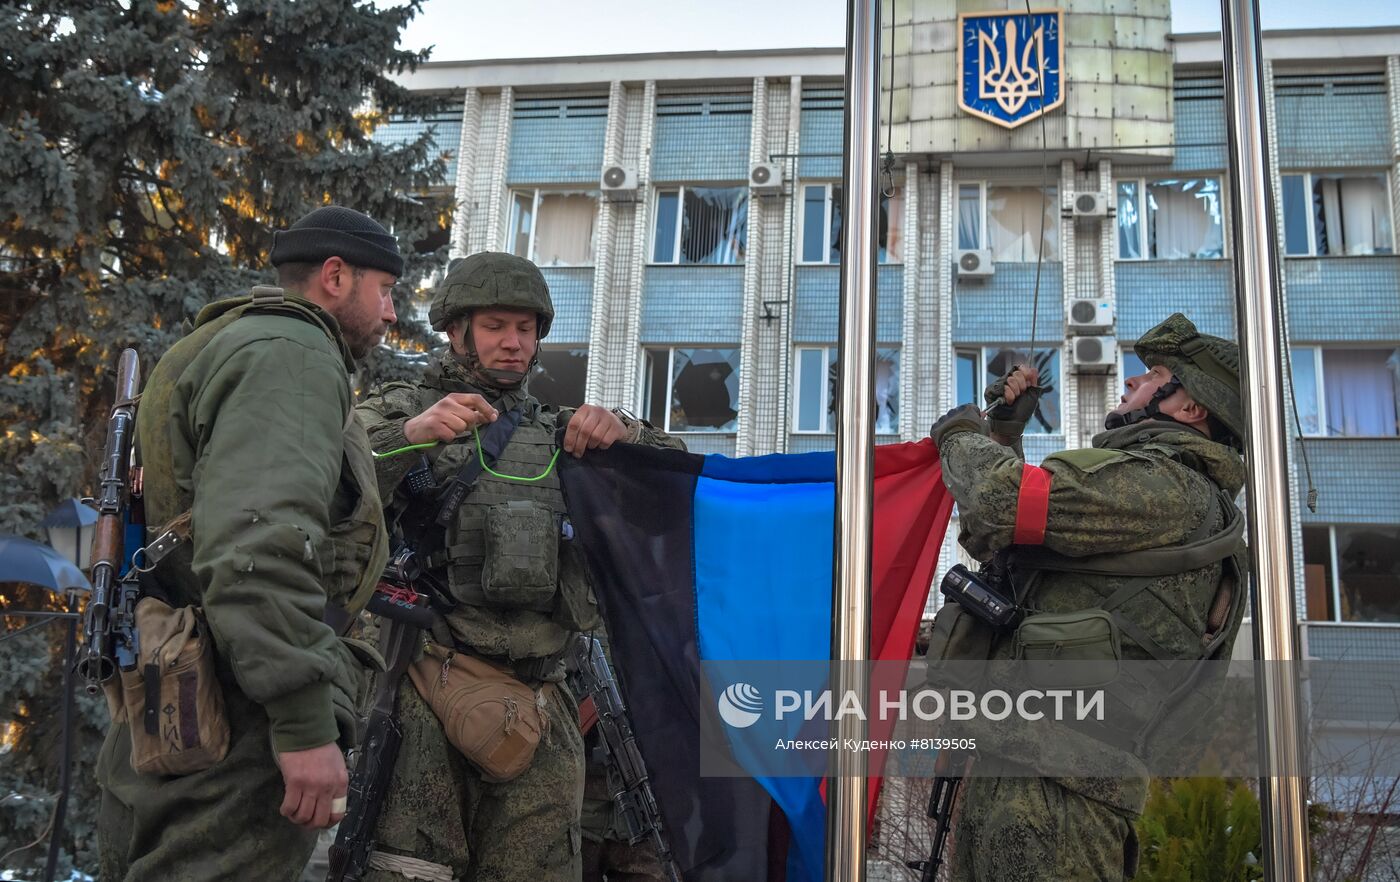 Над Волновахой поднят флаг ДНР